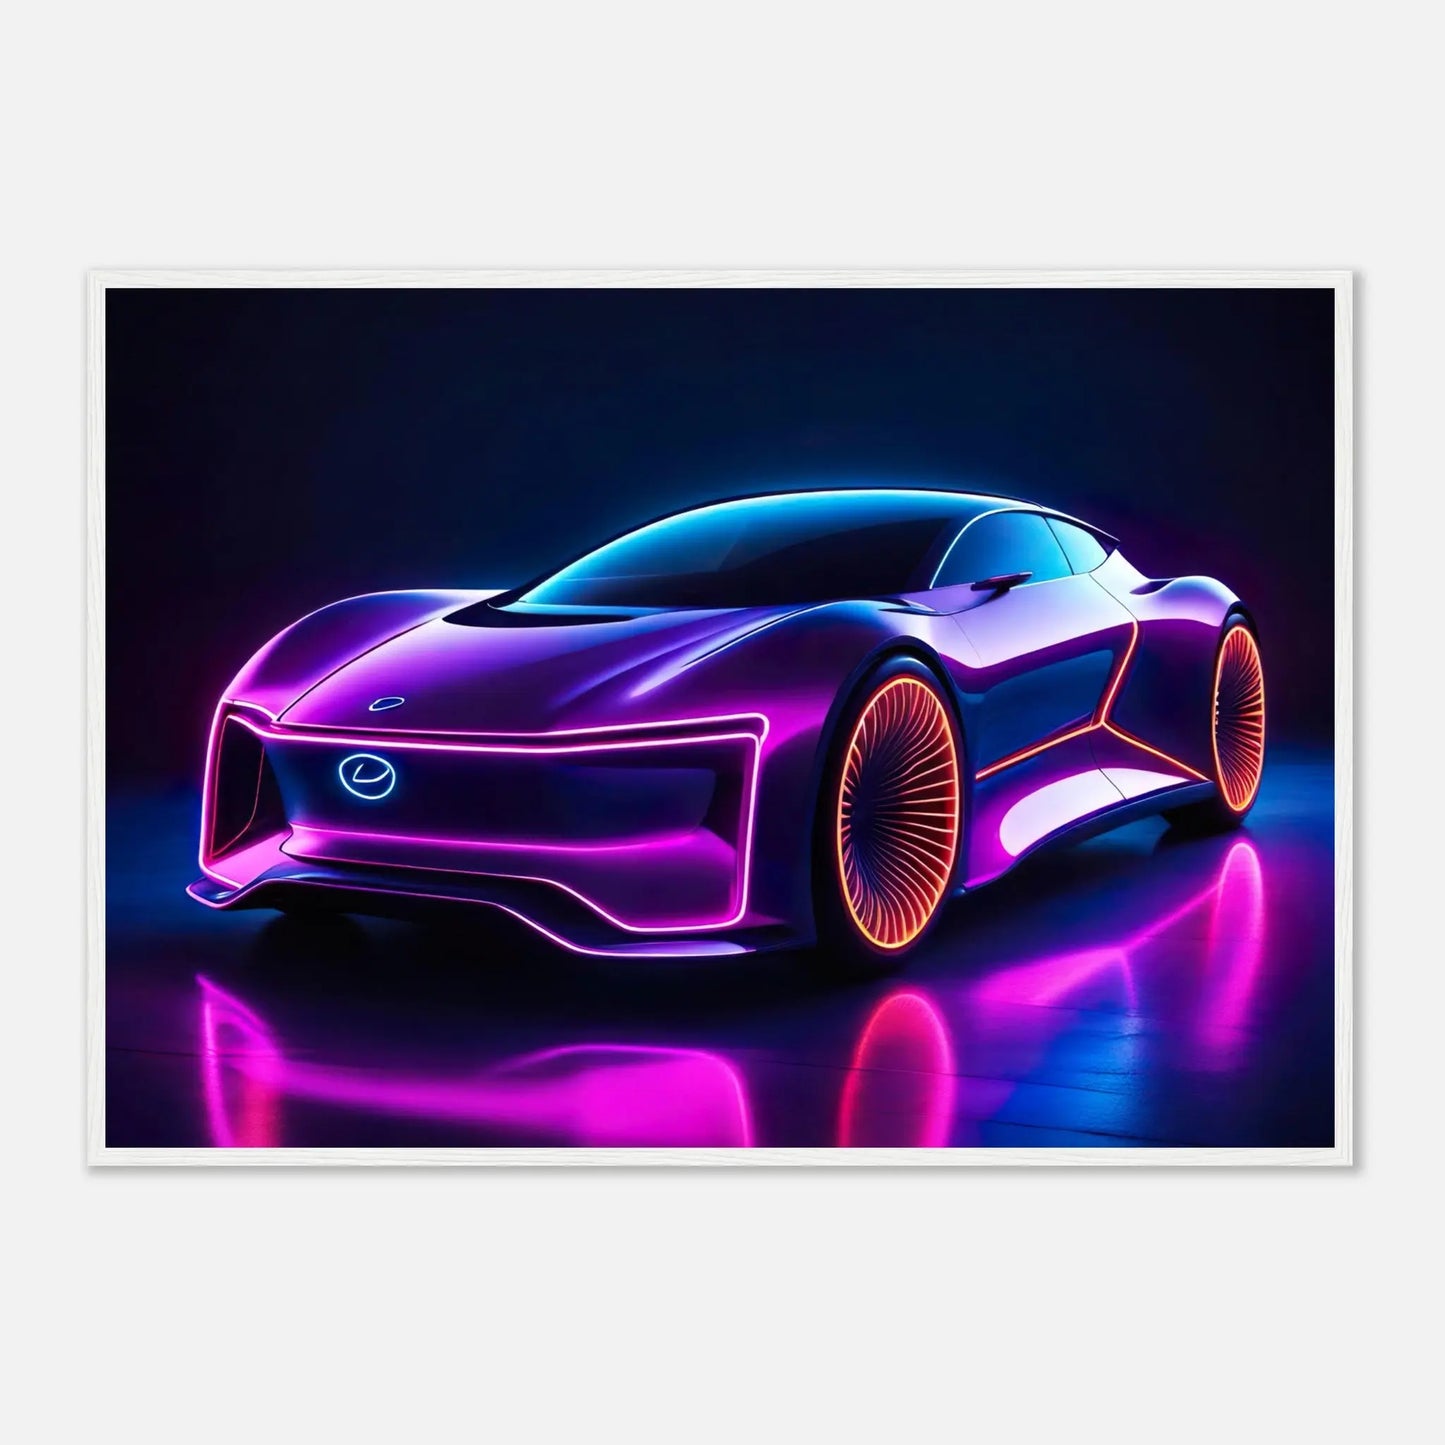 Gerahmtes Premium-Poster -Futuristisches Fahrzeug- Neon Stil, KI-Kunst - RolConArt, Neon, 70x100-cm-28x40-Weißer-Rahmen